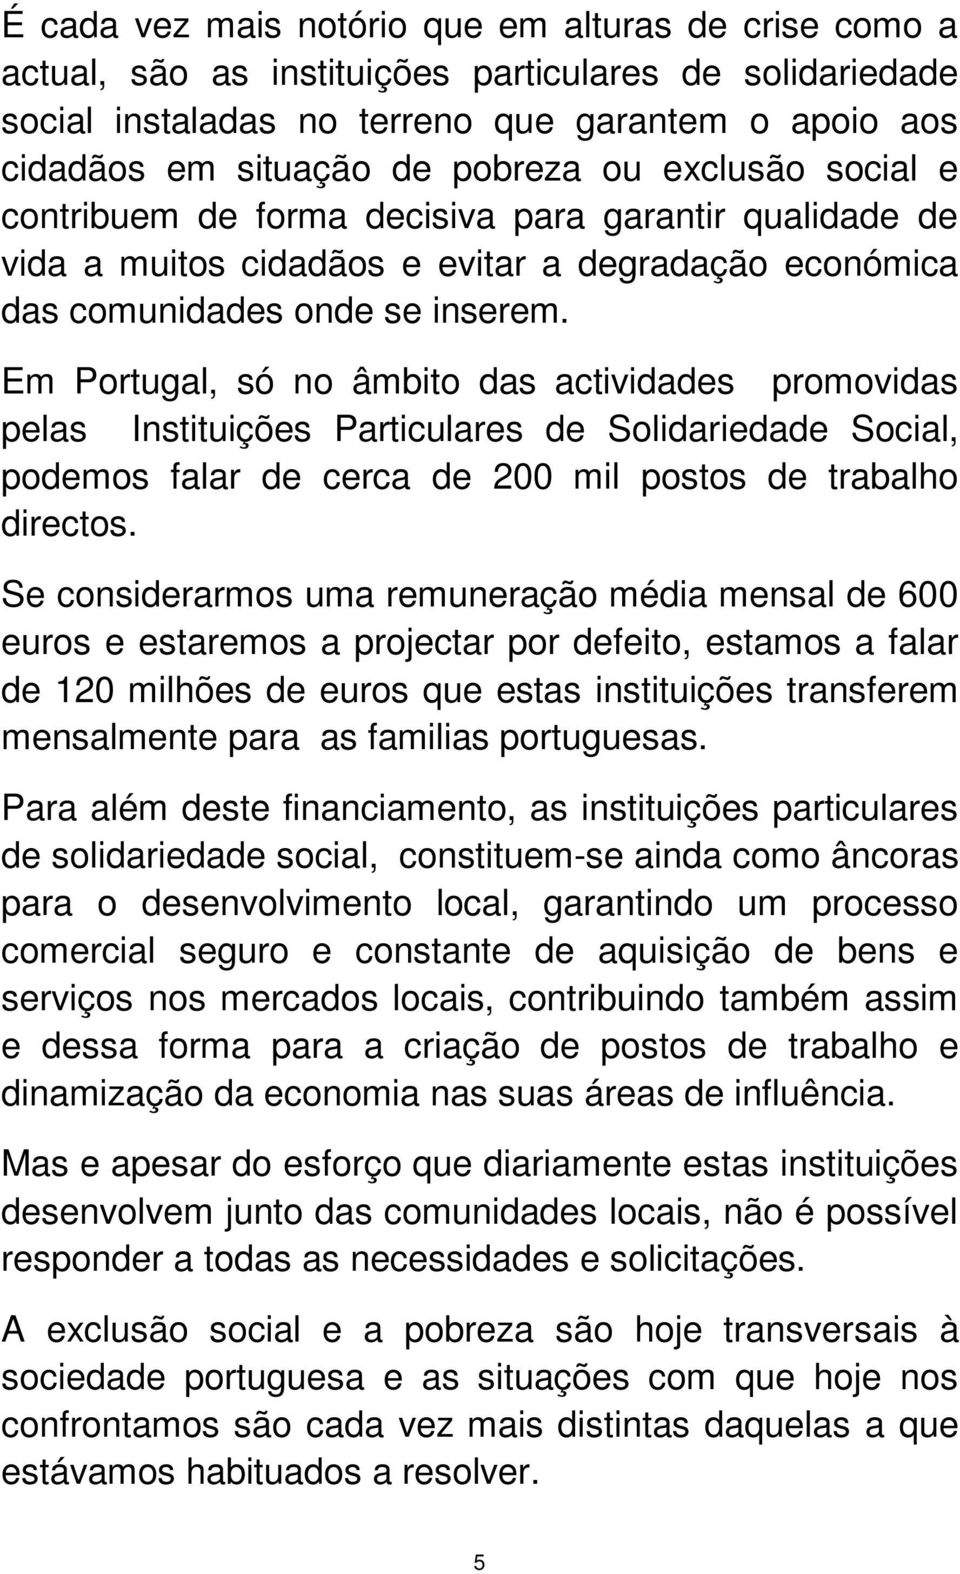 Em Portugal, só no âmbito das actividades promovidas pelas Instituições Particulares de Solidariedade Social, podemos falar de cerca de 200 mil postos de trabalho directos.